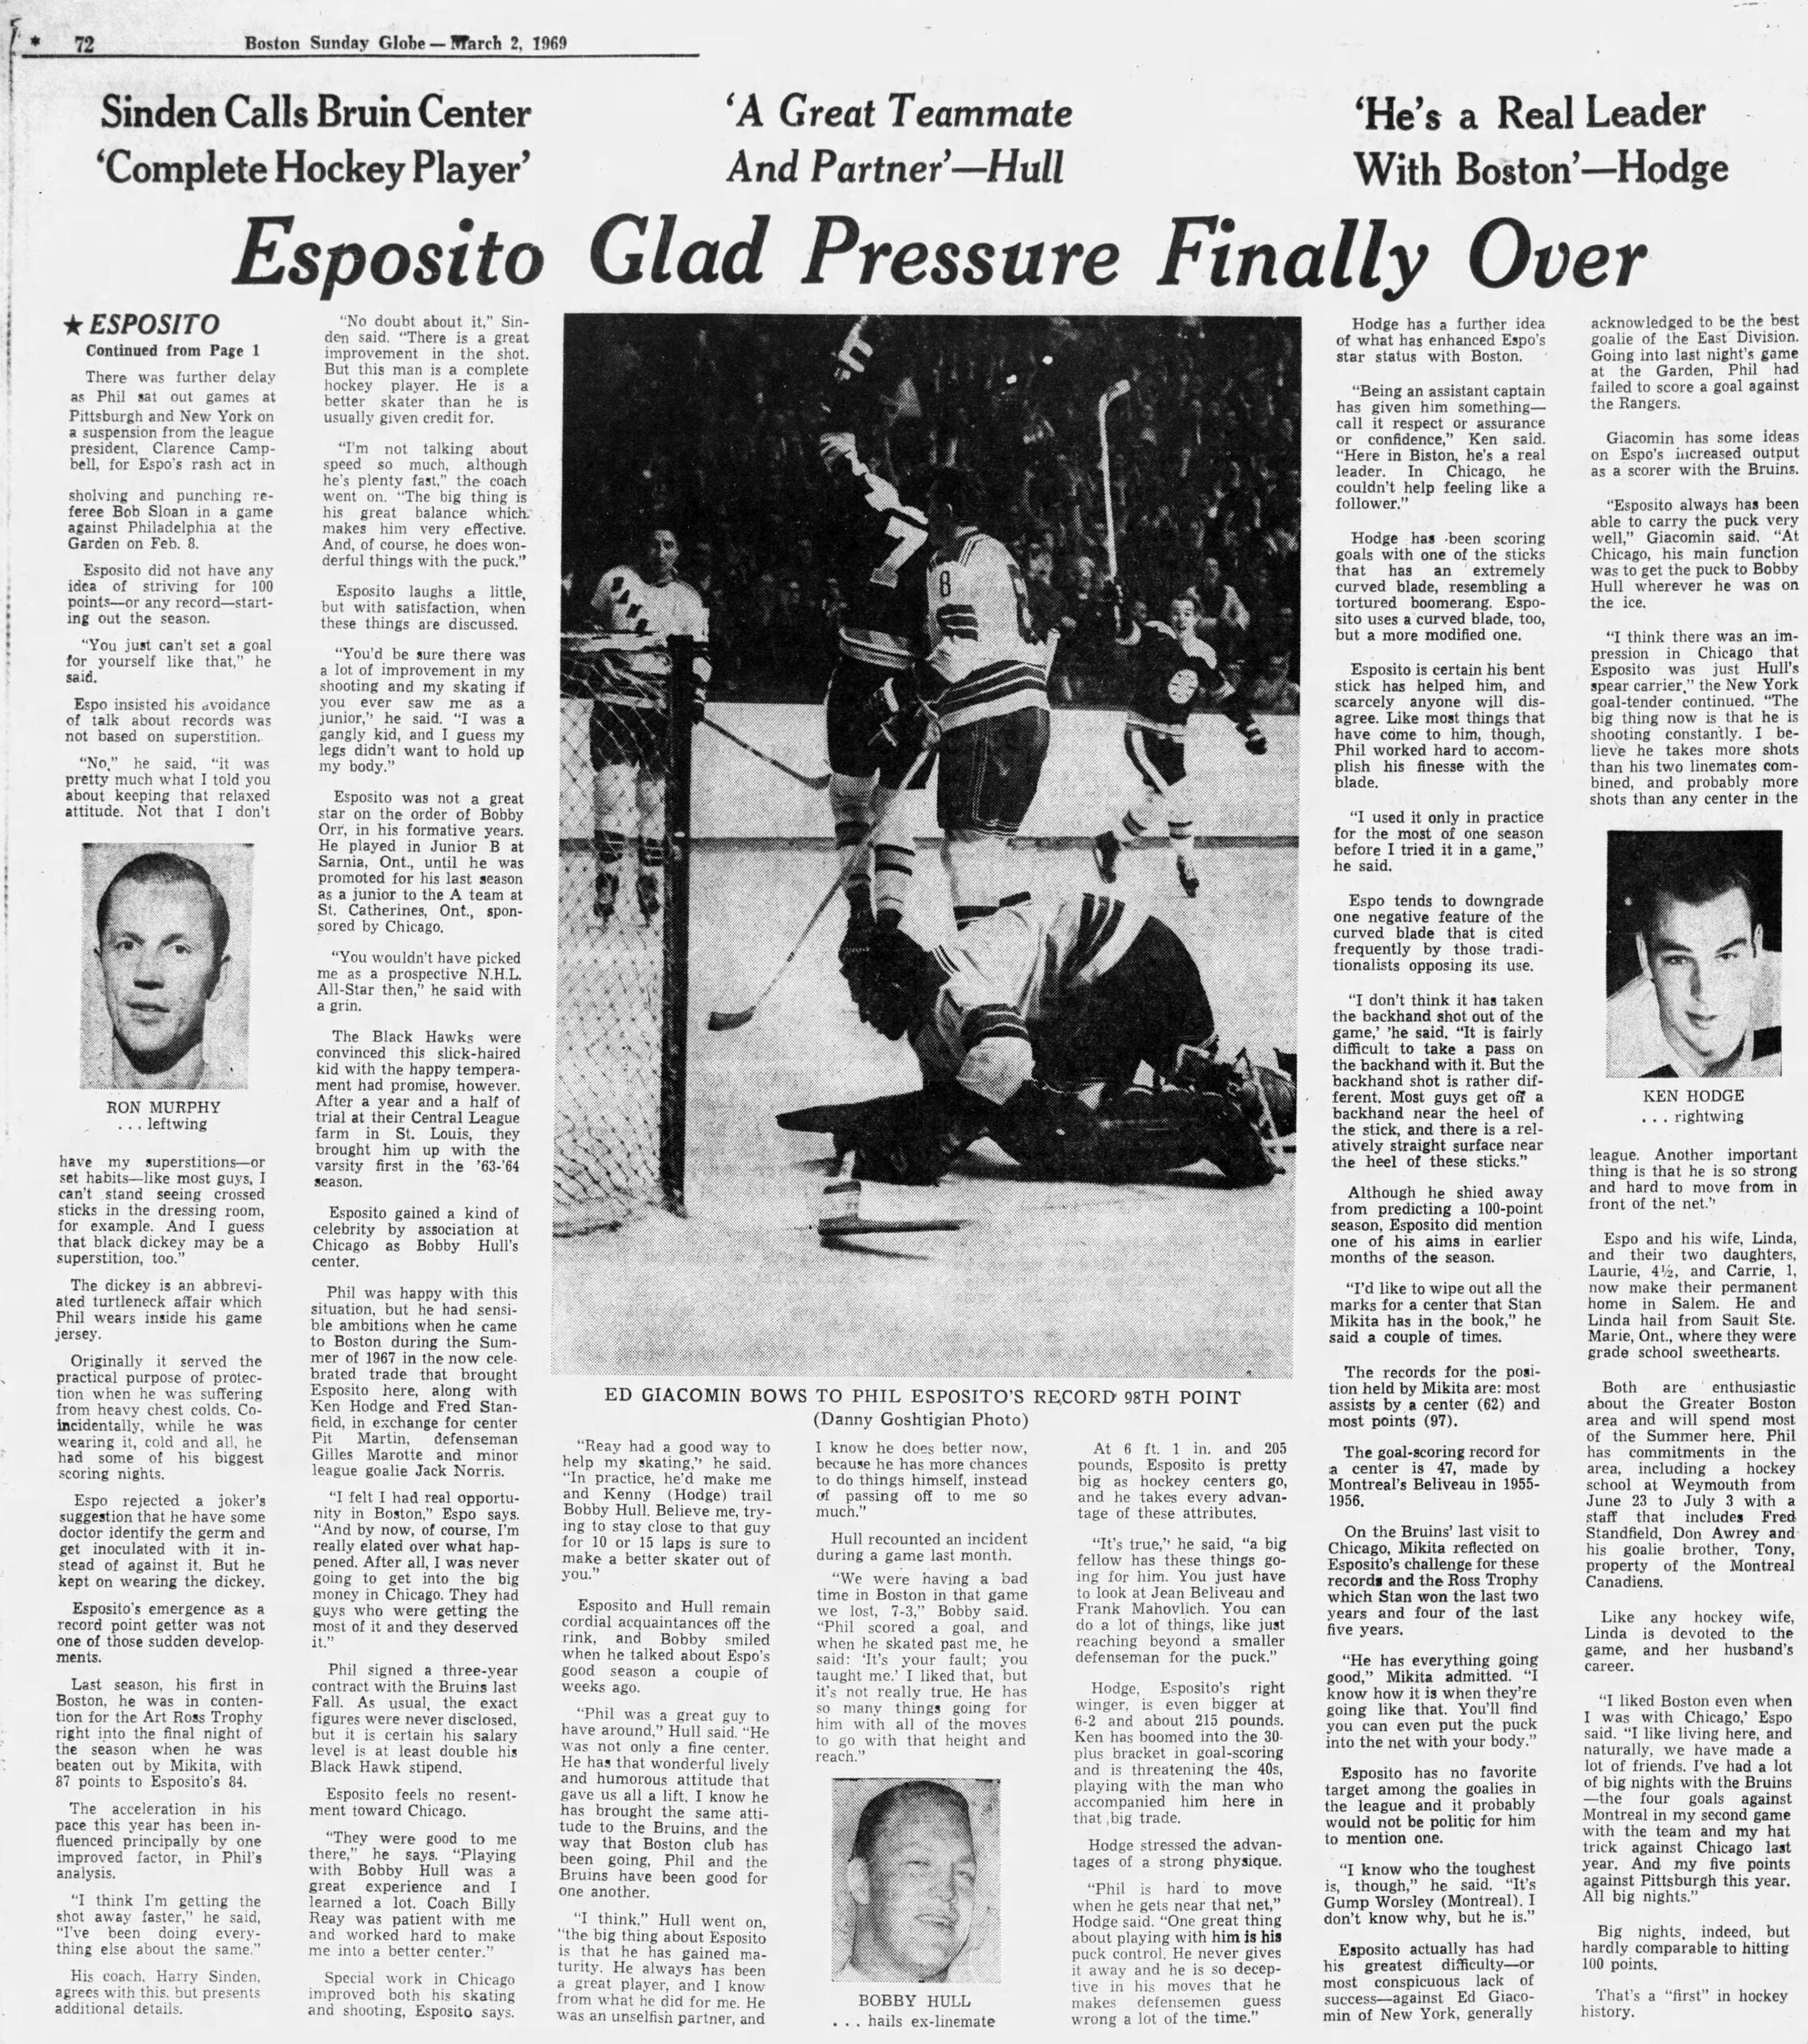 Phil Esposito Bruins 1969